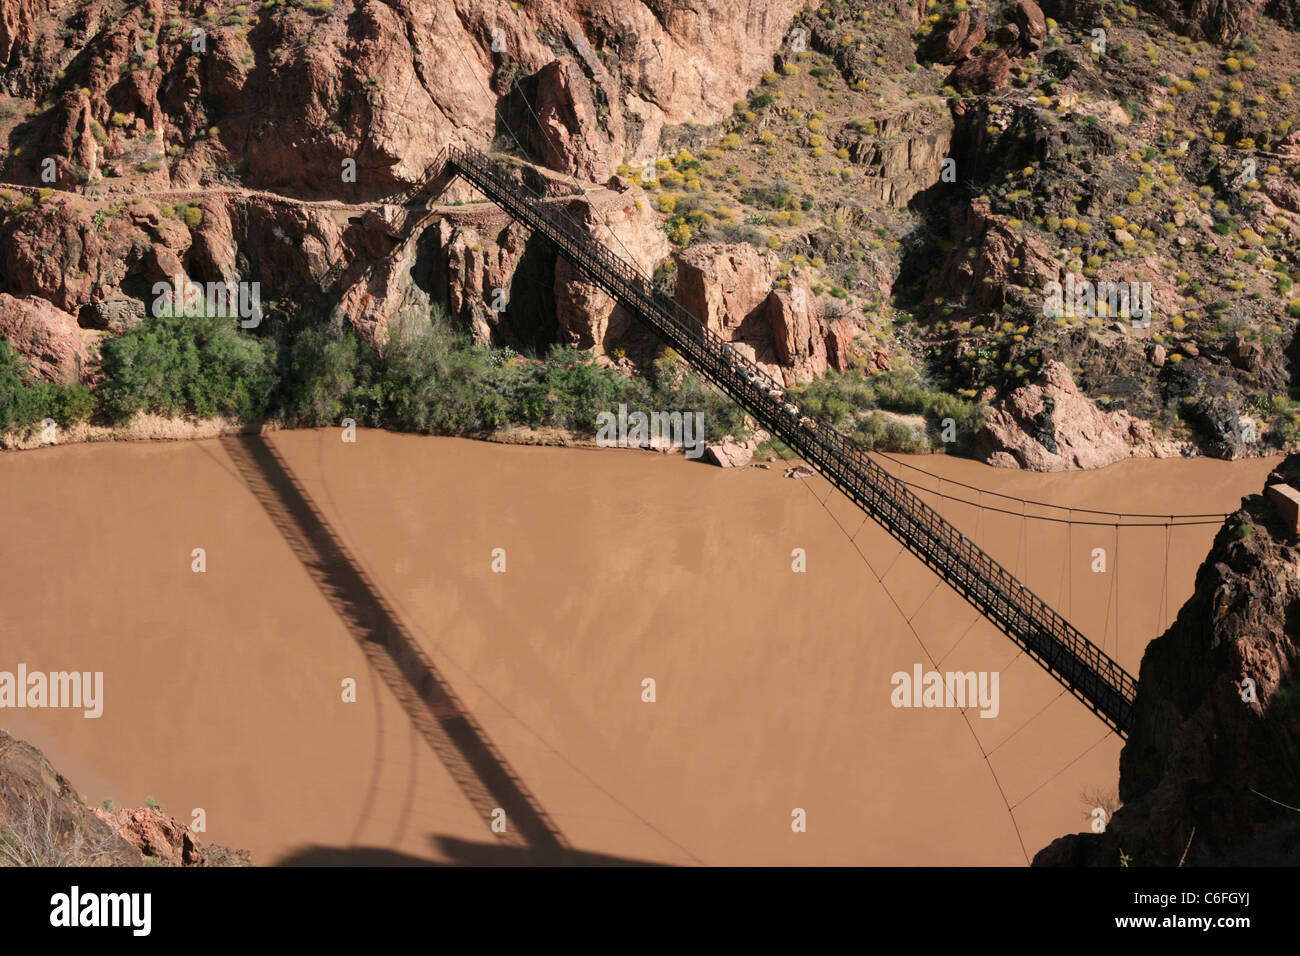 a mule train crossed the black bridge over the Colorado River in the Grand Canyon, Arizona Stock Photo